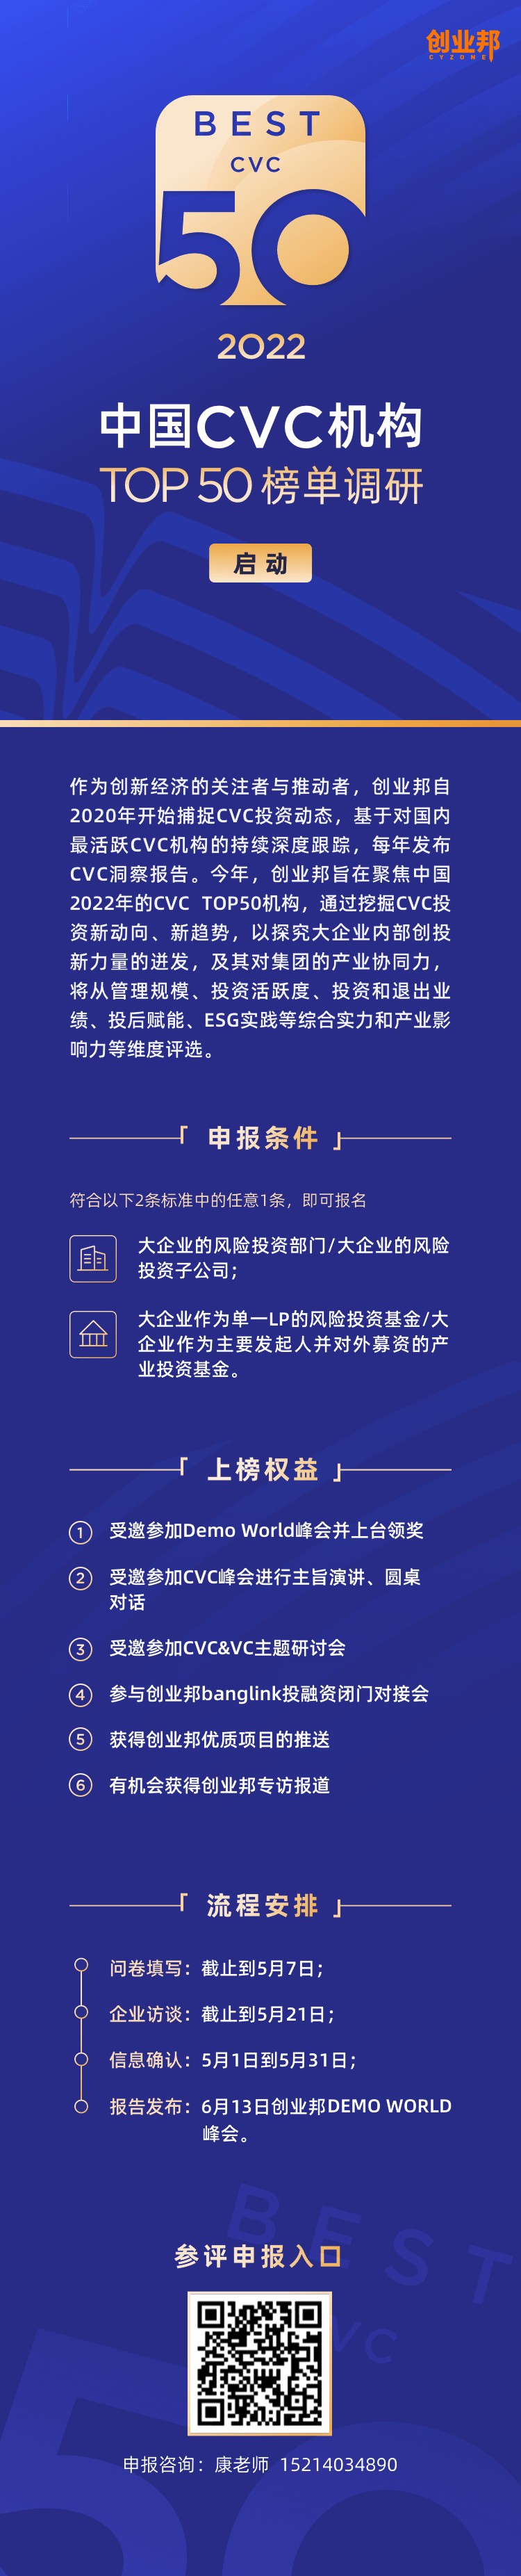 创业邦2022中国CVC机构TOP50榜单调研启动